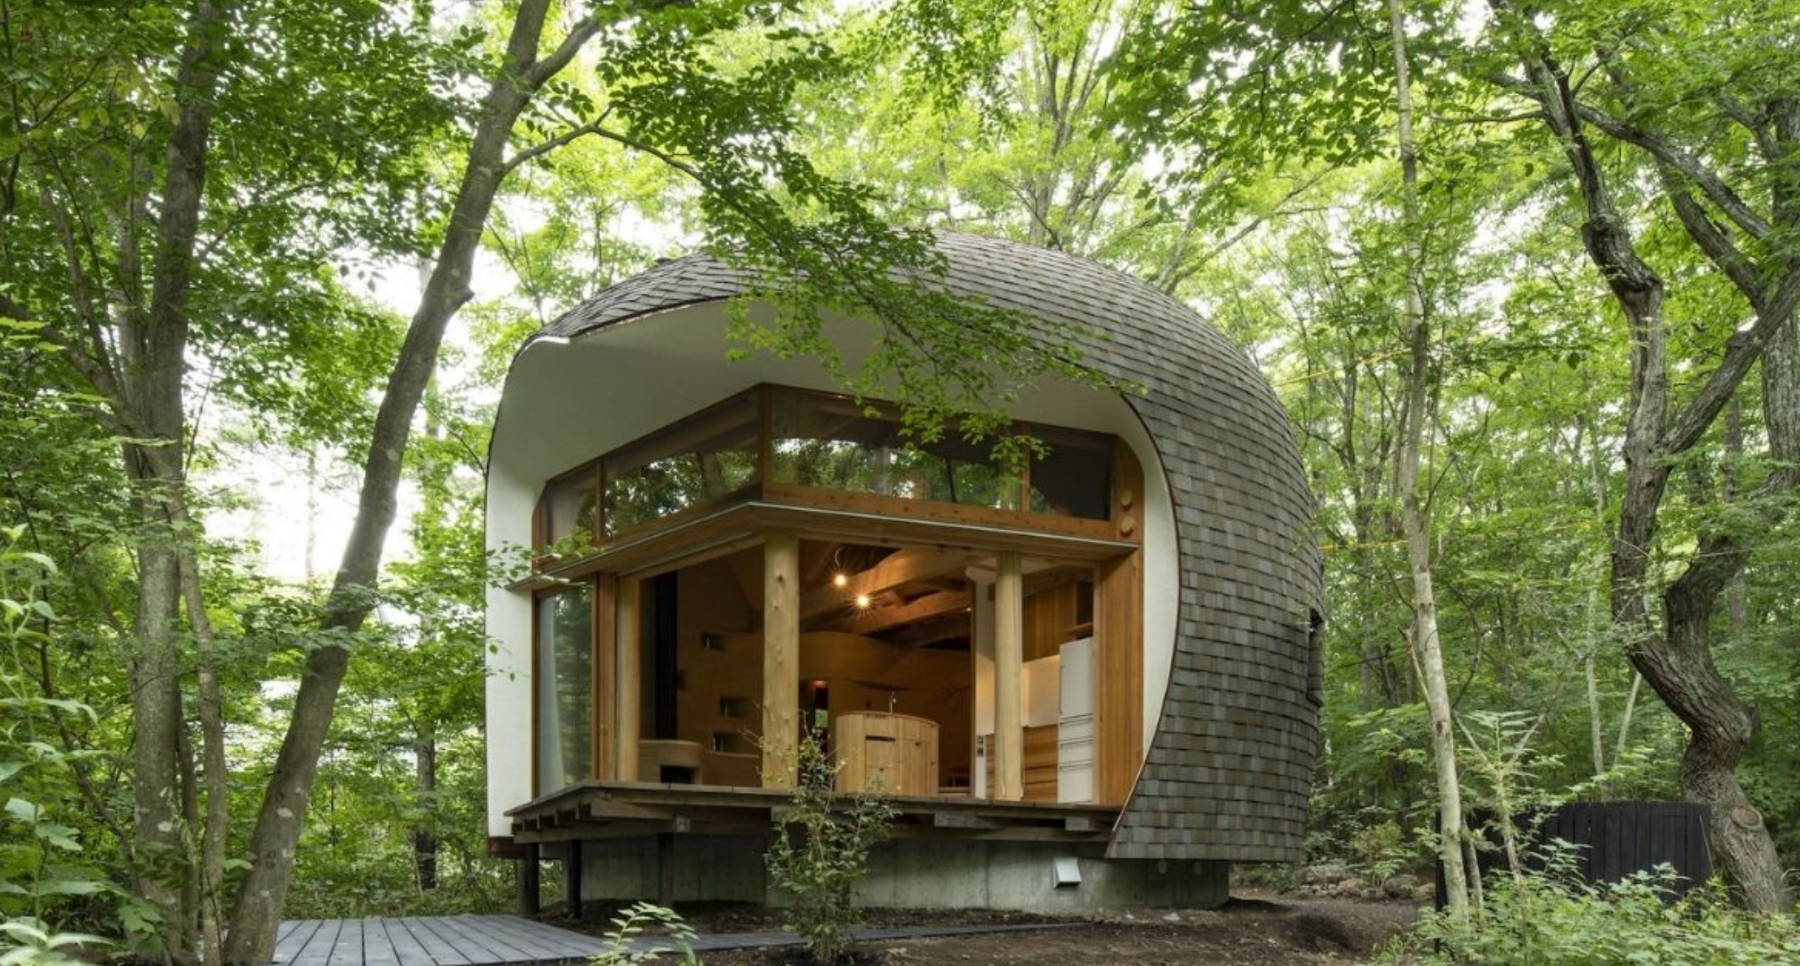 Pronašli smo eco friendly vilu u Japanu za savršen odmor u prirodi